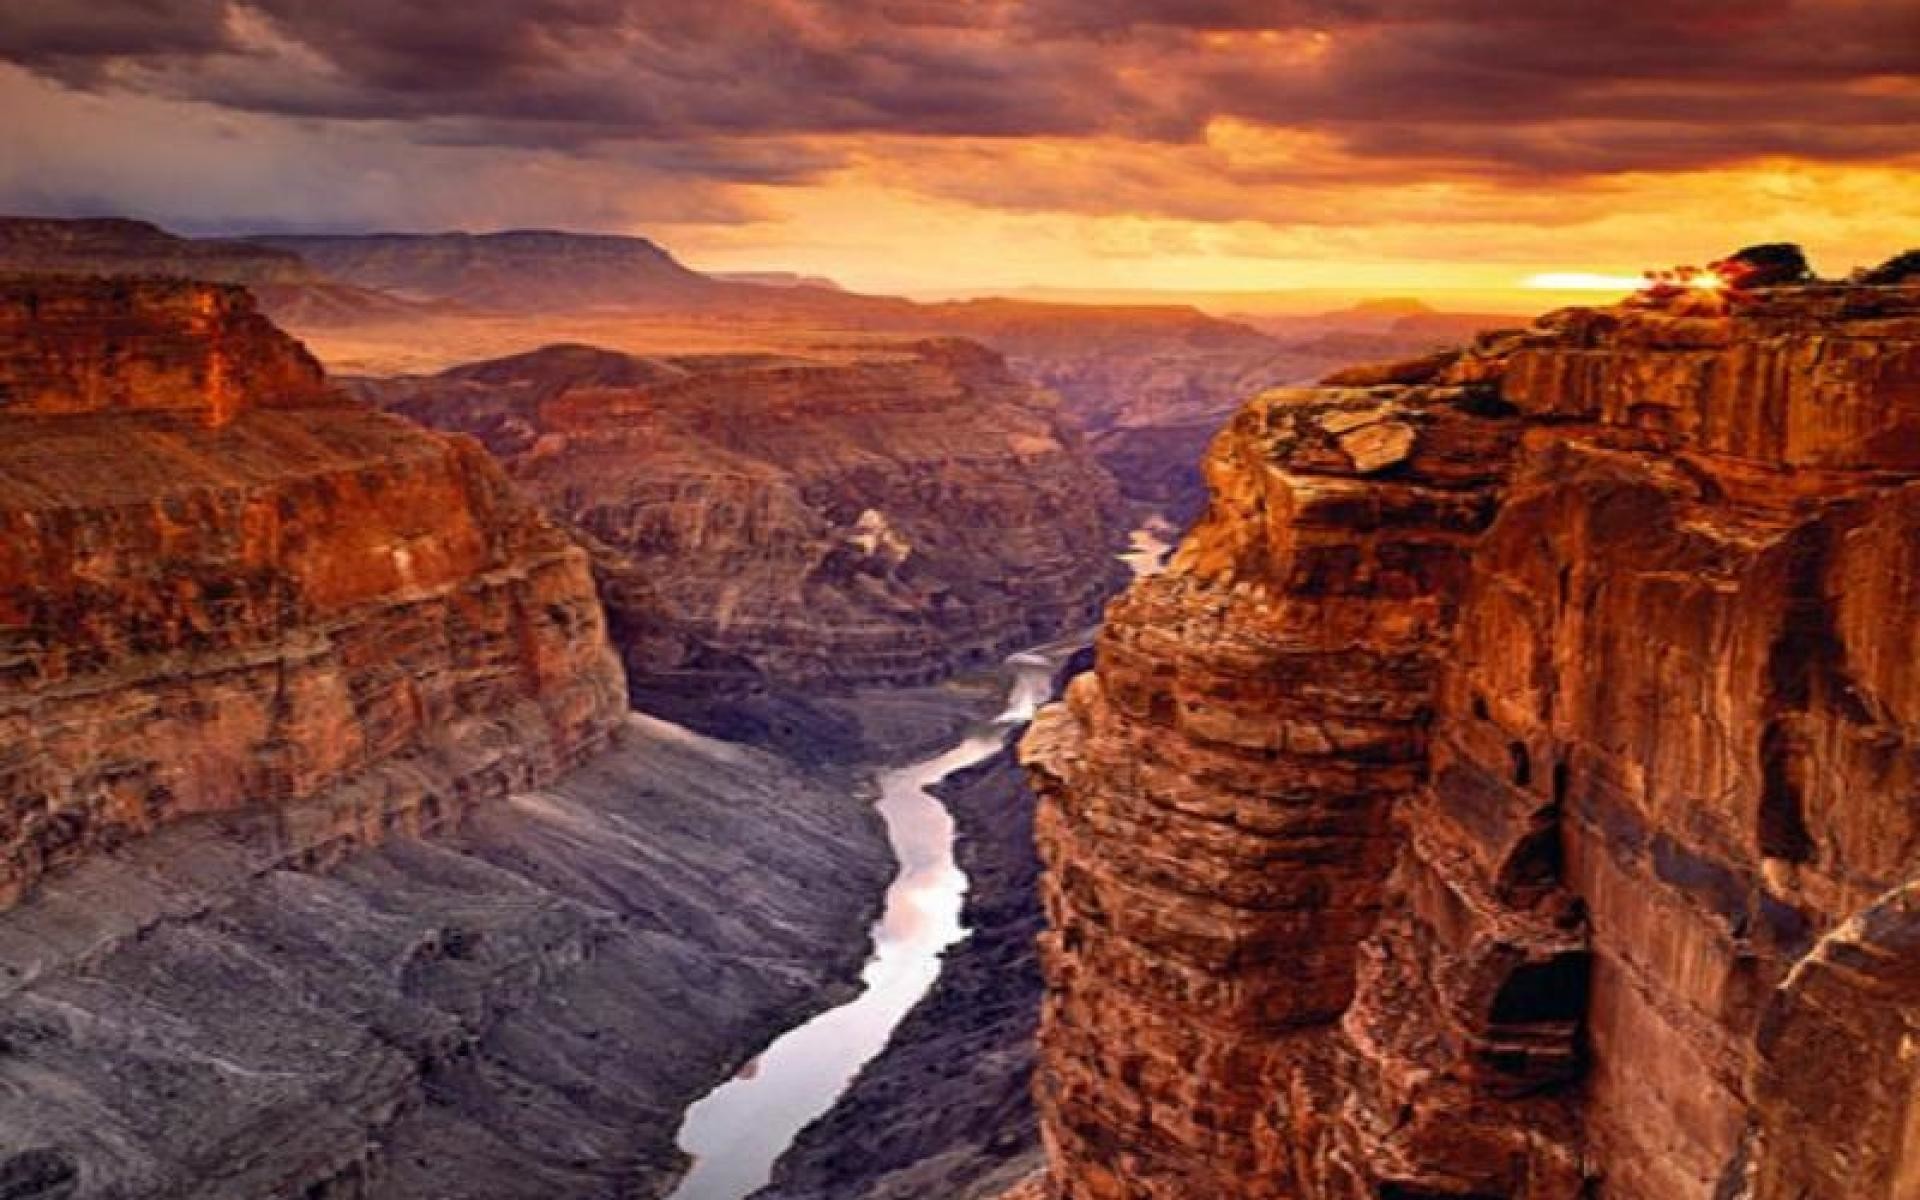 Гранд-Каньон (Grand Canyon) – величественный и завораживающий